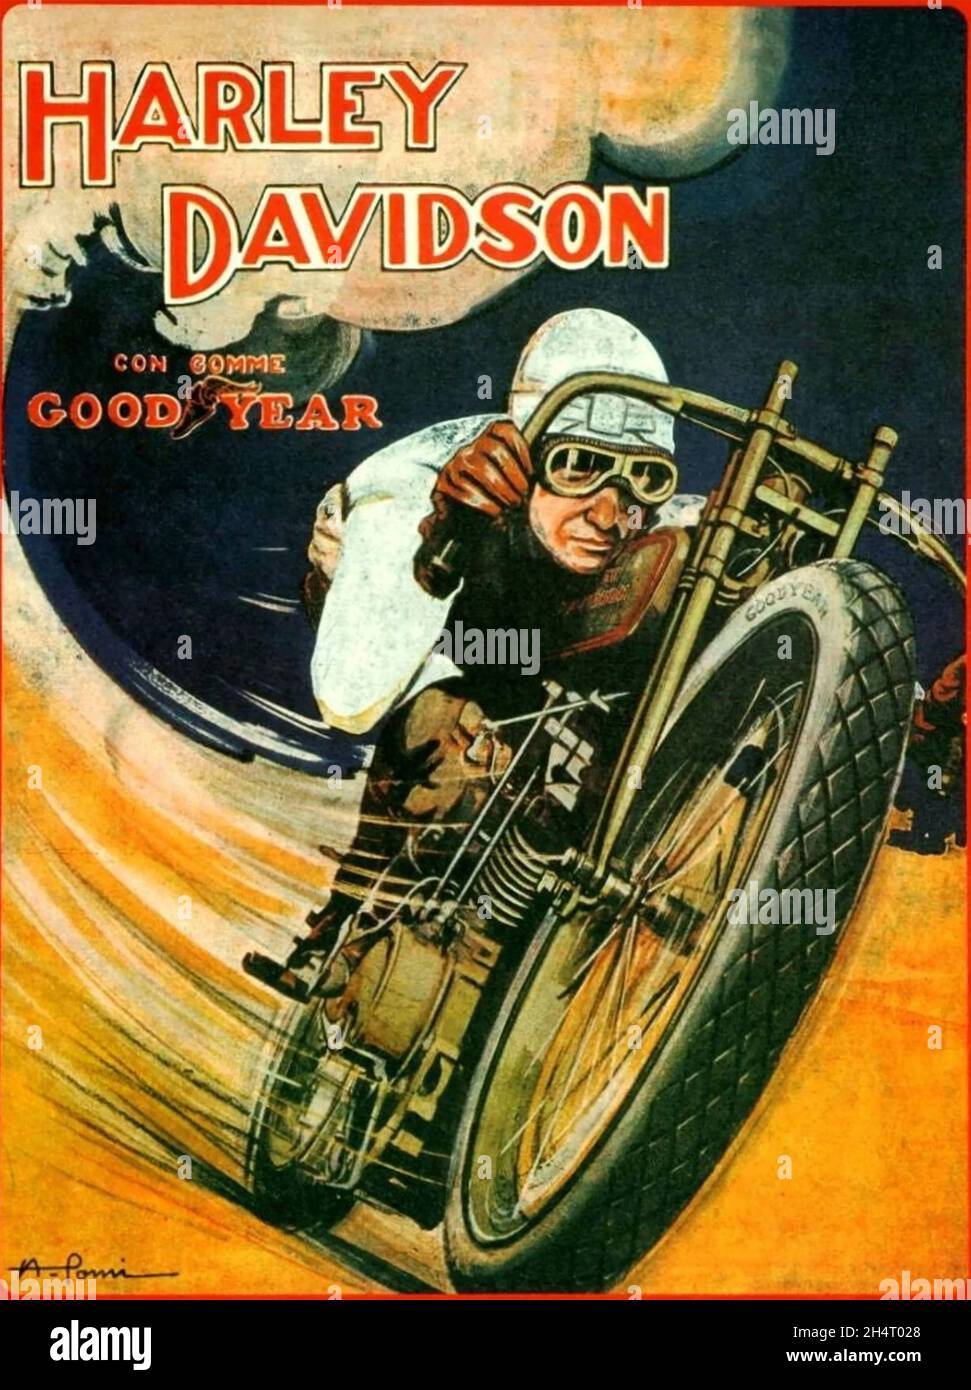 HARLEY-DAVIDSON constructeur américain de moto.affiche à propos de 1927 Banque D'Images